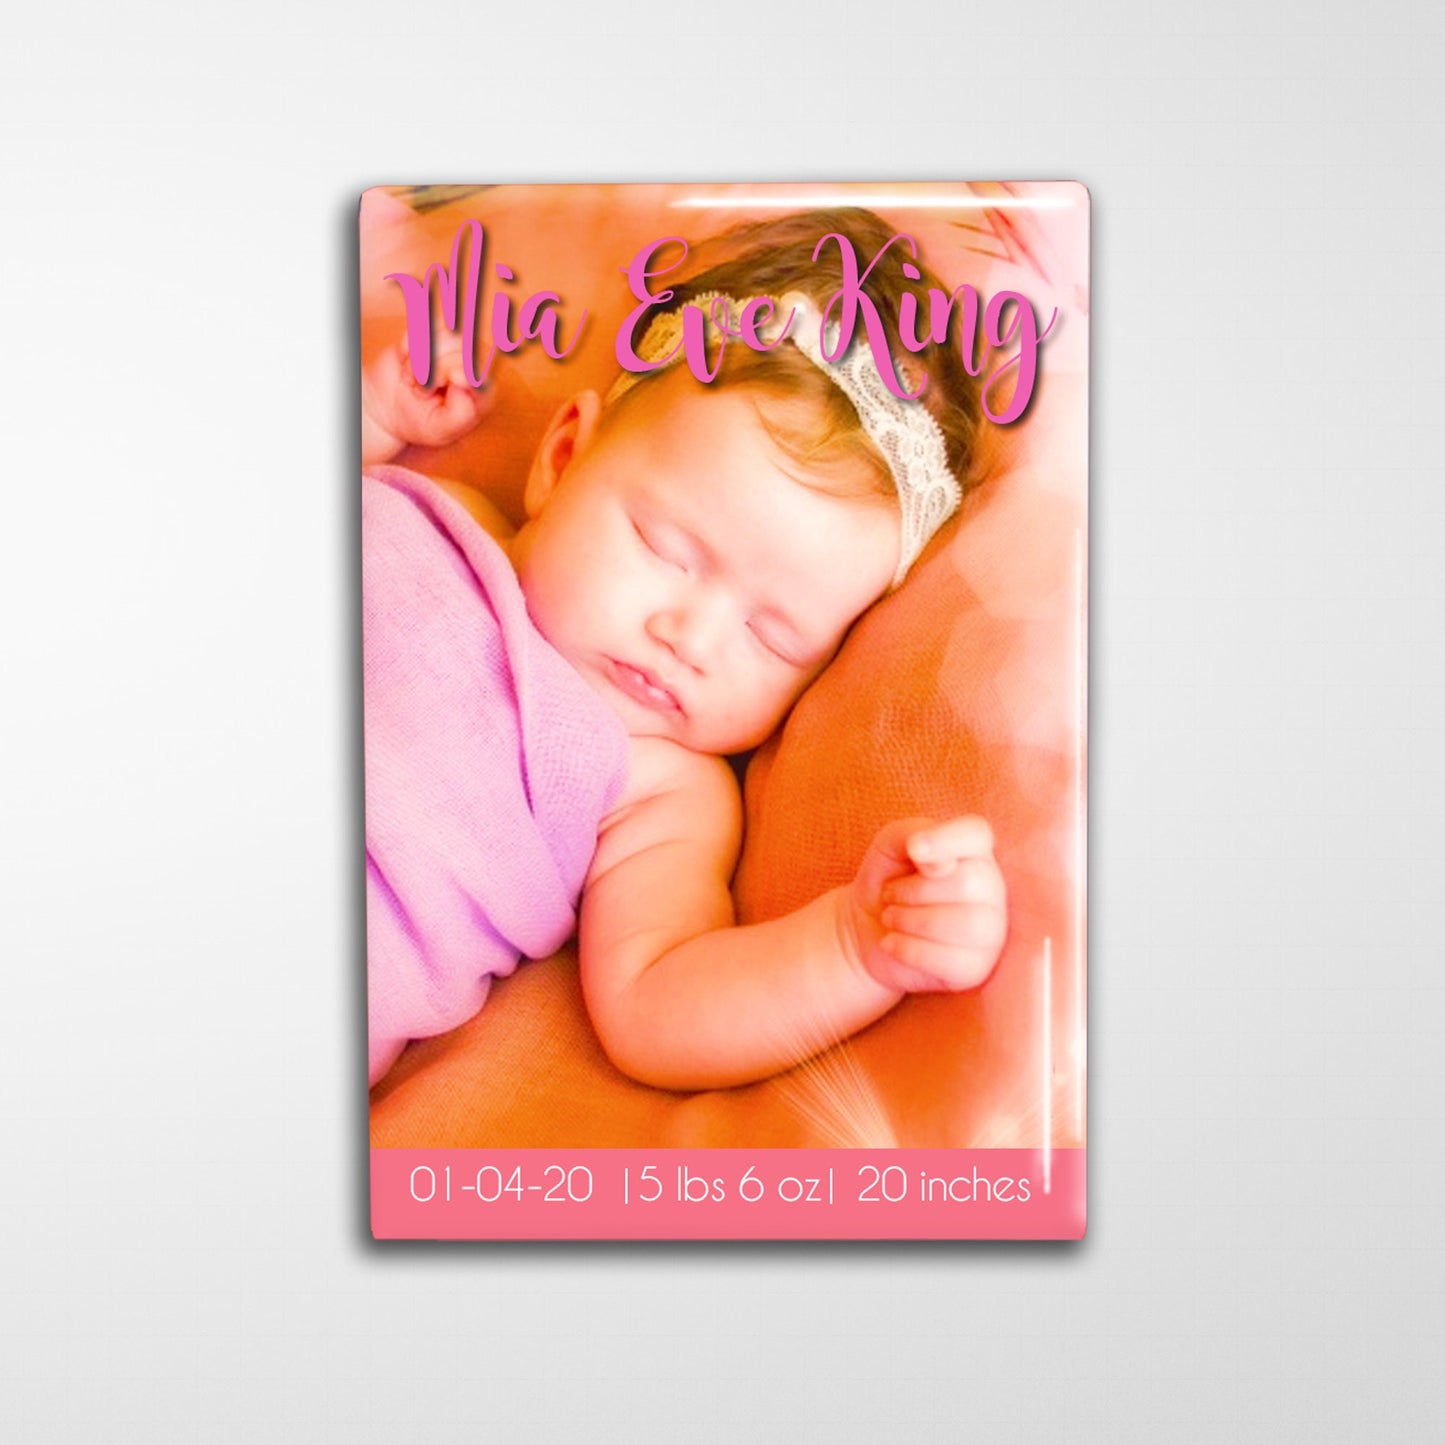 Personalized Birth Announcement Design - 2x3"